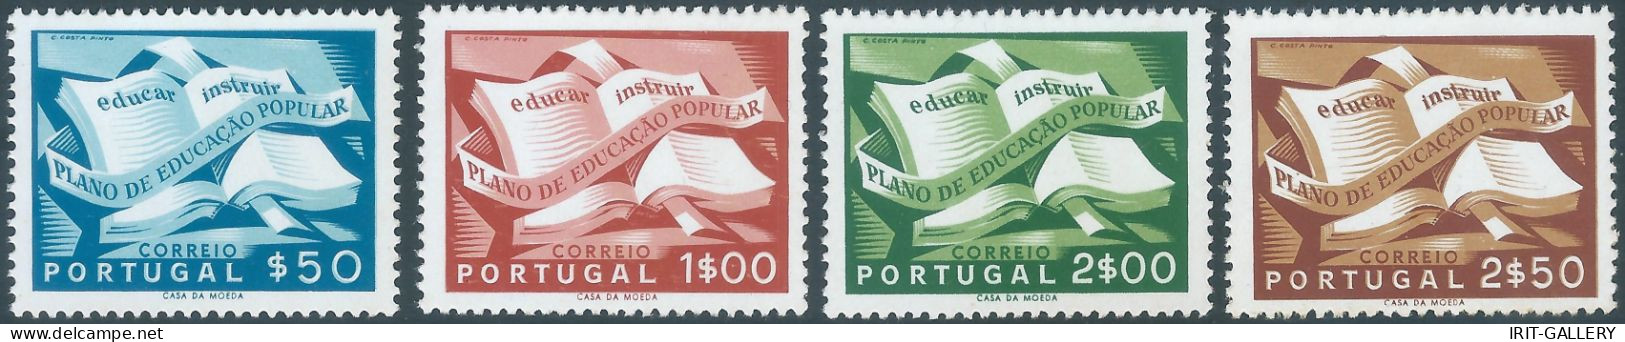 Portogallo - Portugal - 1954 Popular Education,complete Series,MNH - Nuovi